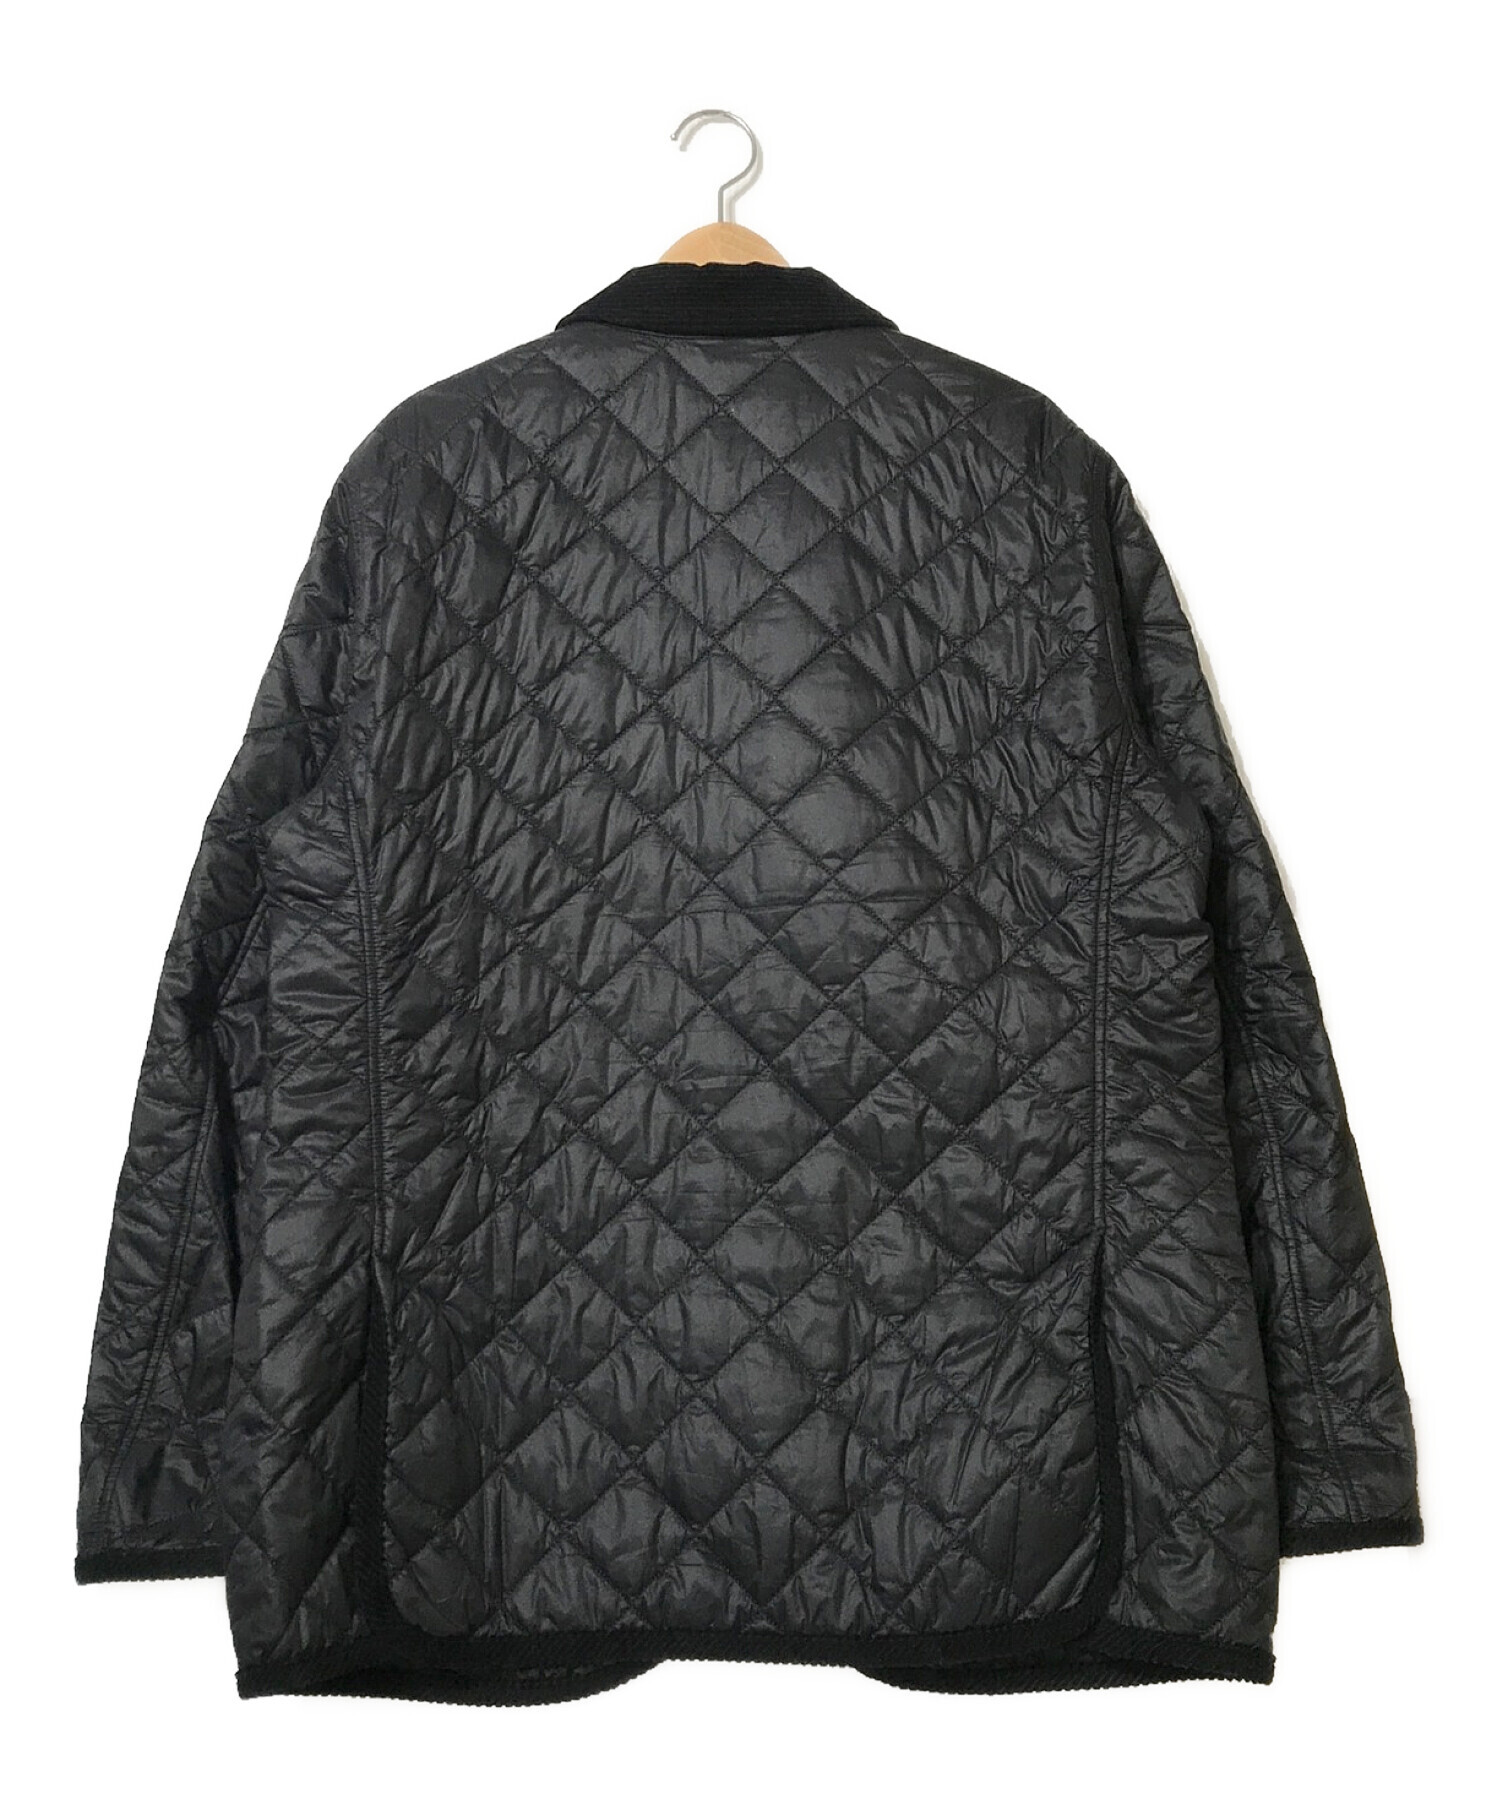 Barbour × Engineered Garments (バブアー × エンジニアードガーメンツ) キルティングジャケット ブラック サイズ:L